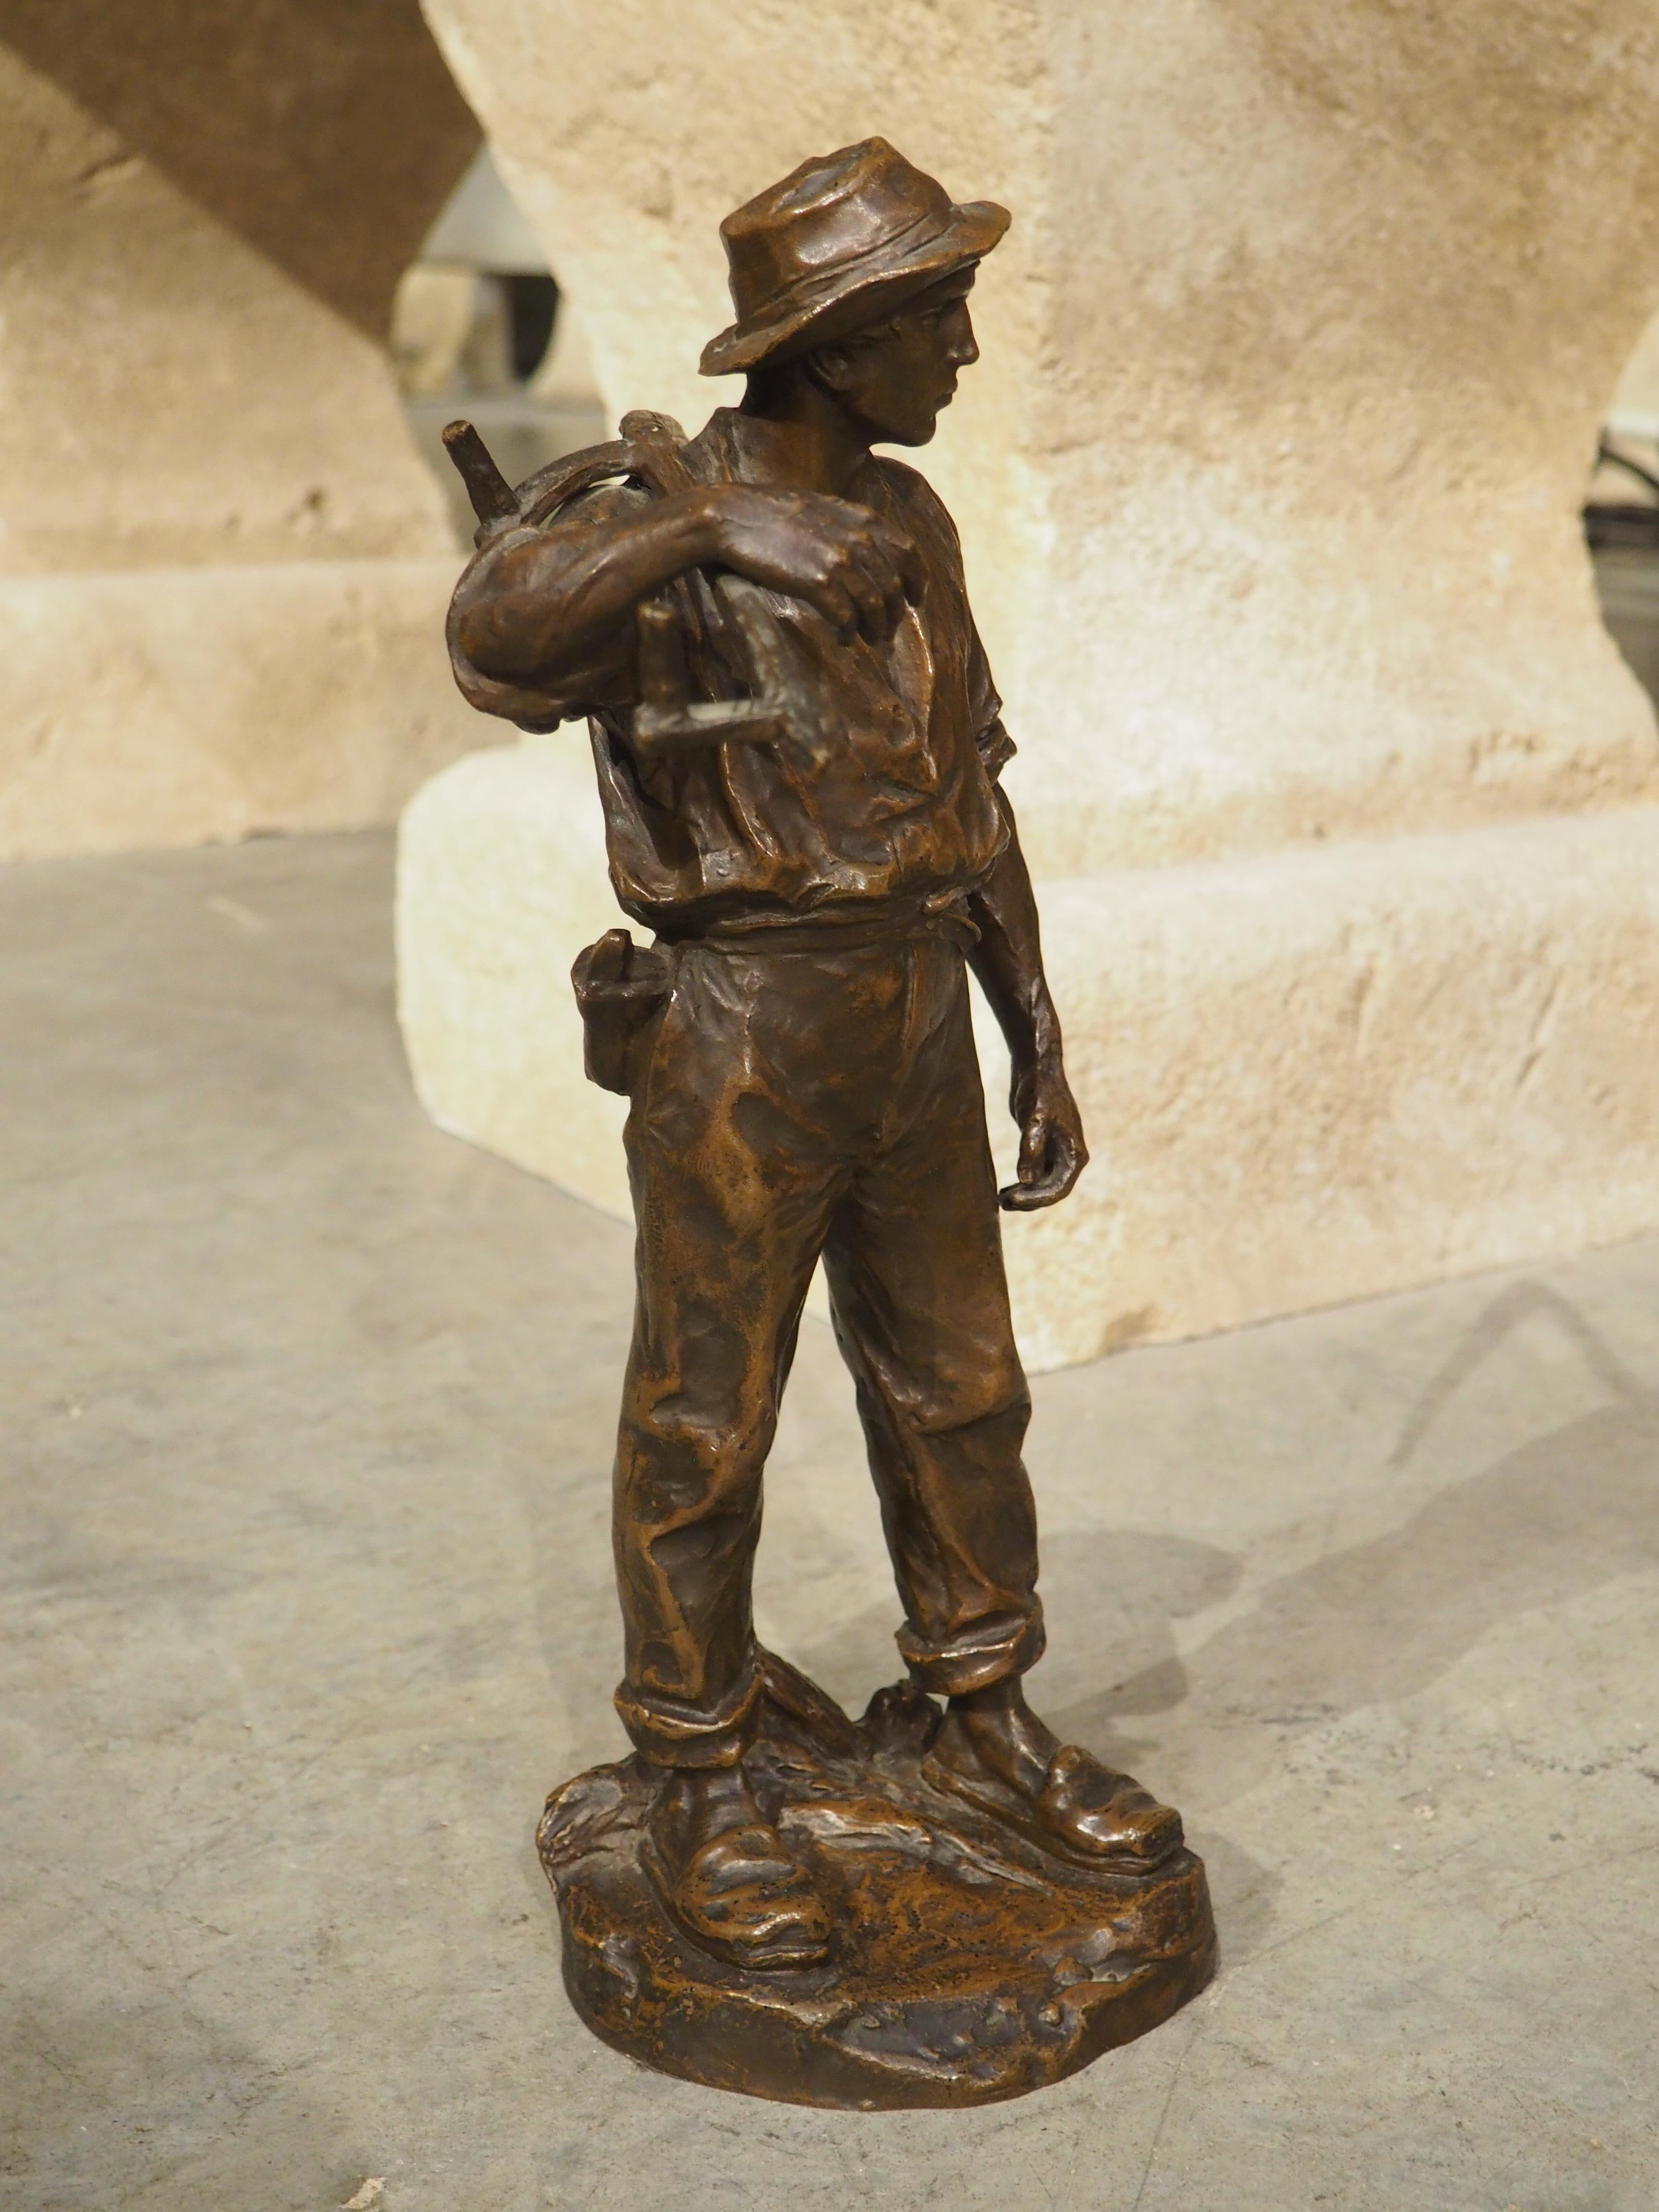 Datant du début des années 1900, cette paire de sculptures en bronze, à la riche patine brune, est l'œuvre de l'artiste autrichien Hans Müller. Les deux figurines mesurent environ 15 pouces (l'homme est plus grand d'un demi-pouce) et reposent sur